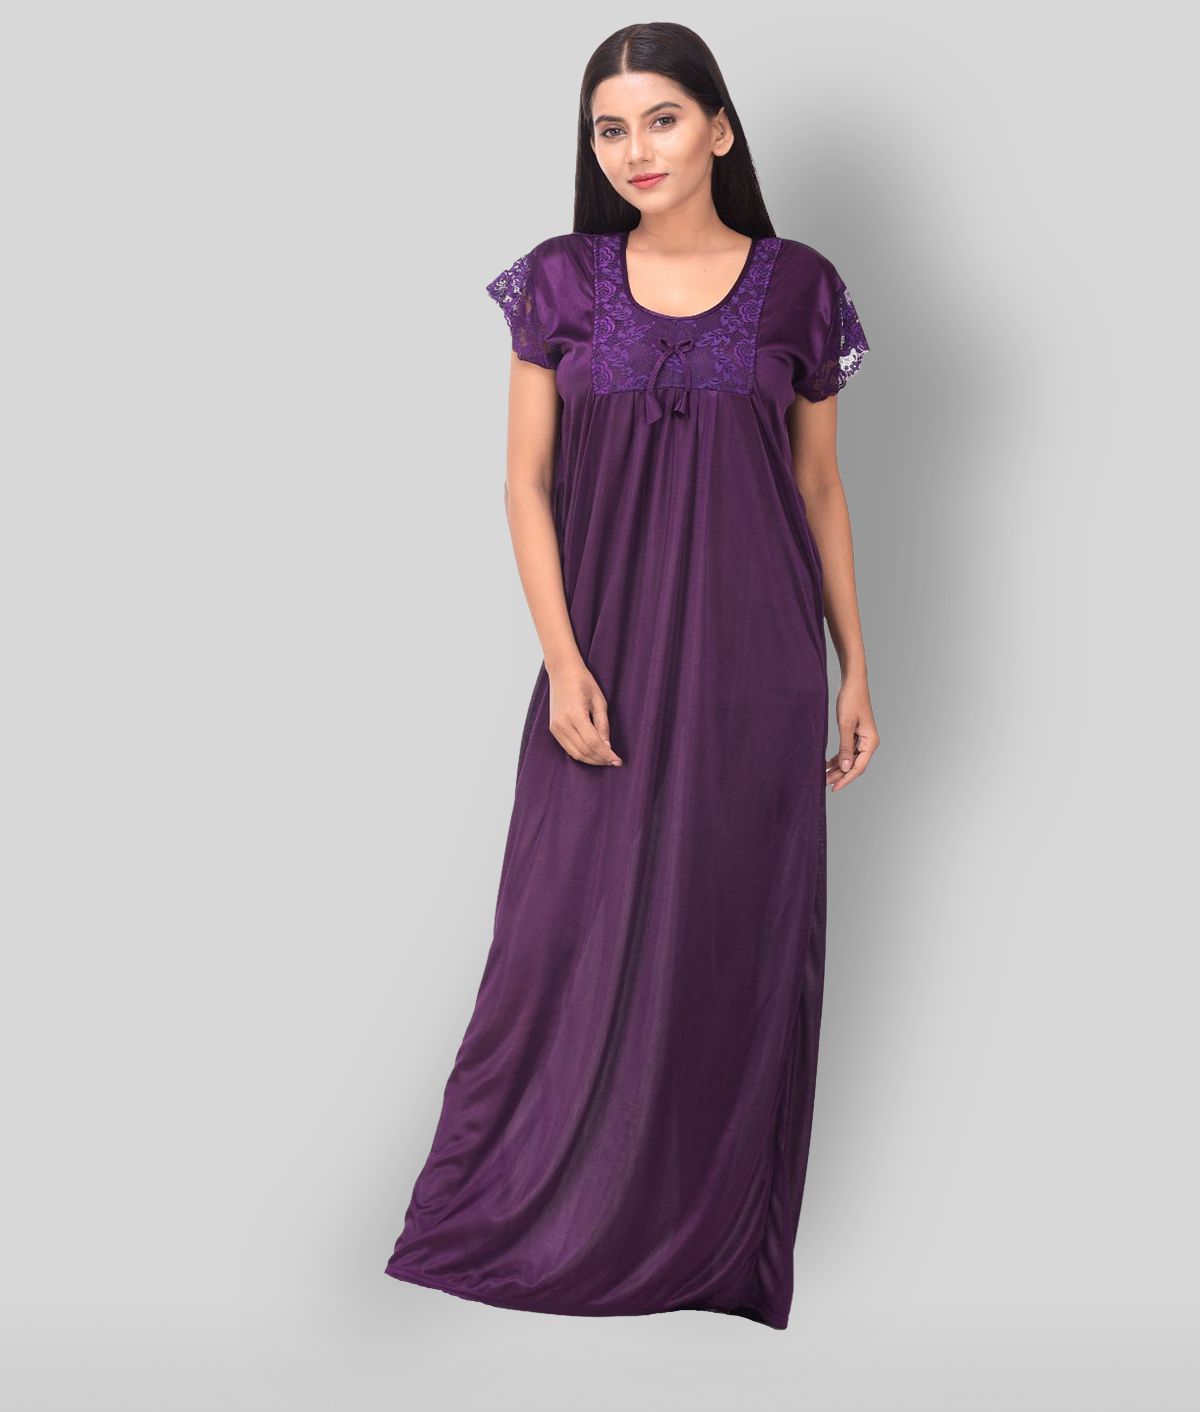 Apratim - Purple Satin Women's Nightwear Nighty & Night Gowns ( Pack of 1 )